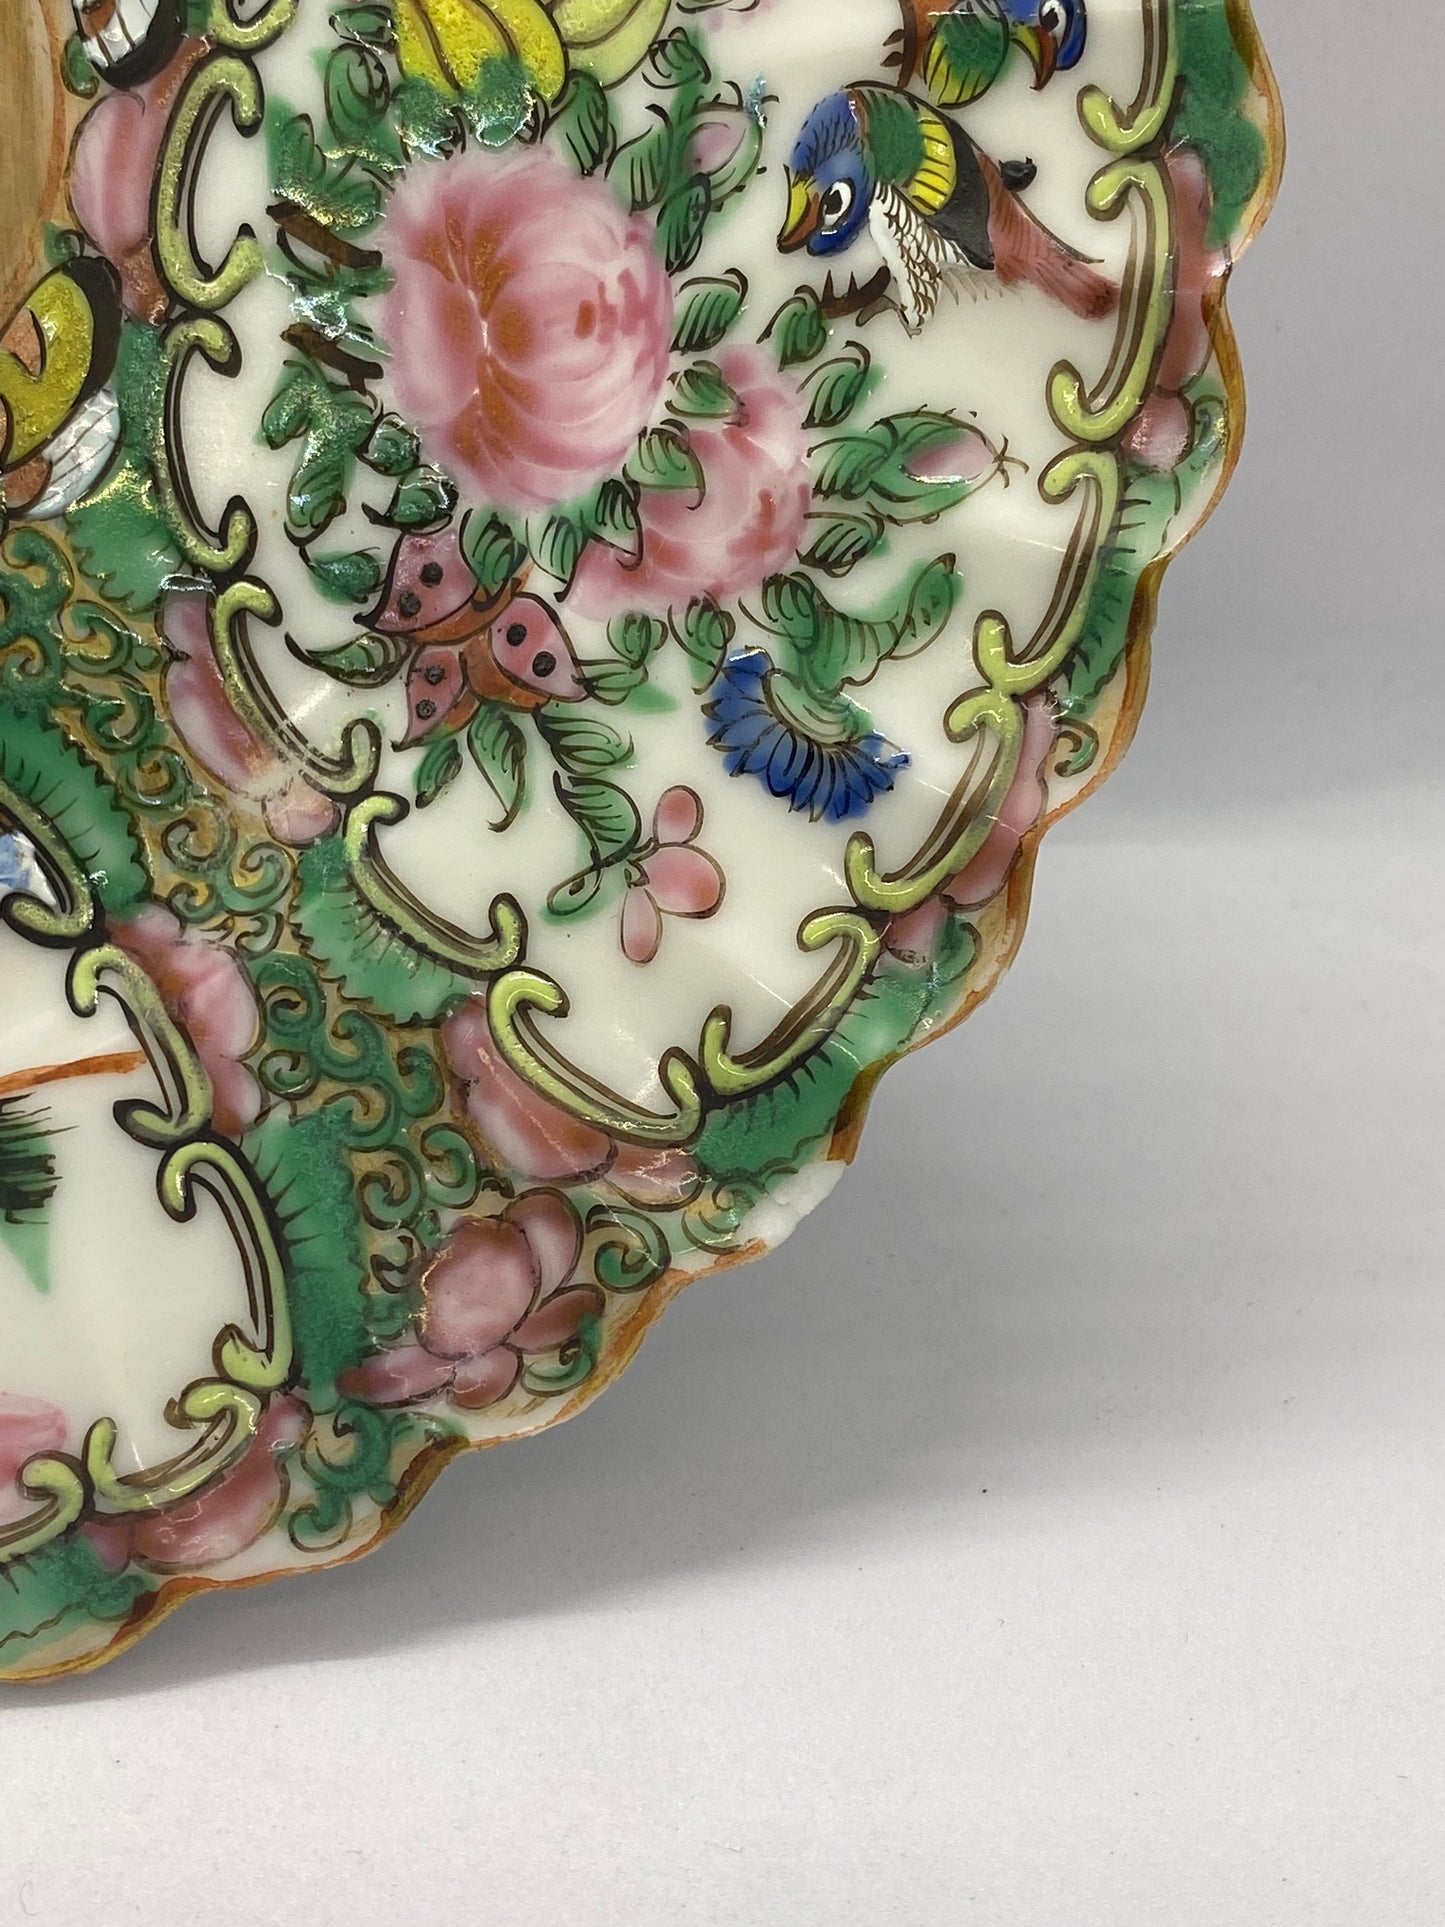 19 世纪中后期广州出口带扇形图案的玫瑰花章盘 - 3 件中的 1 件。